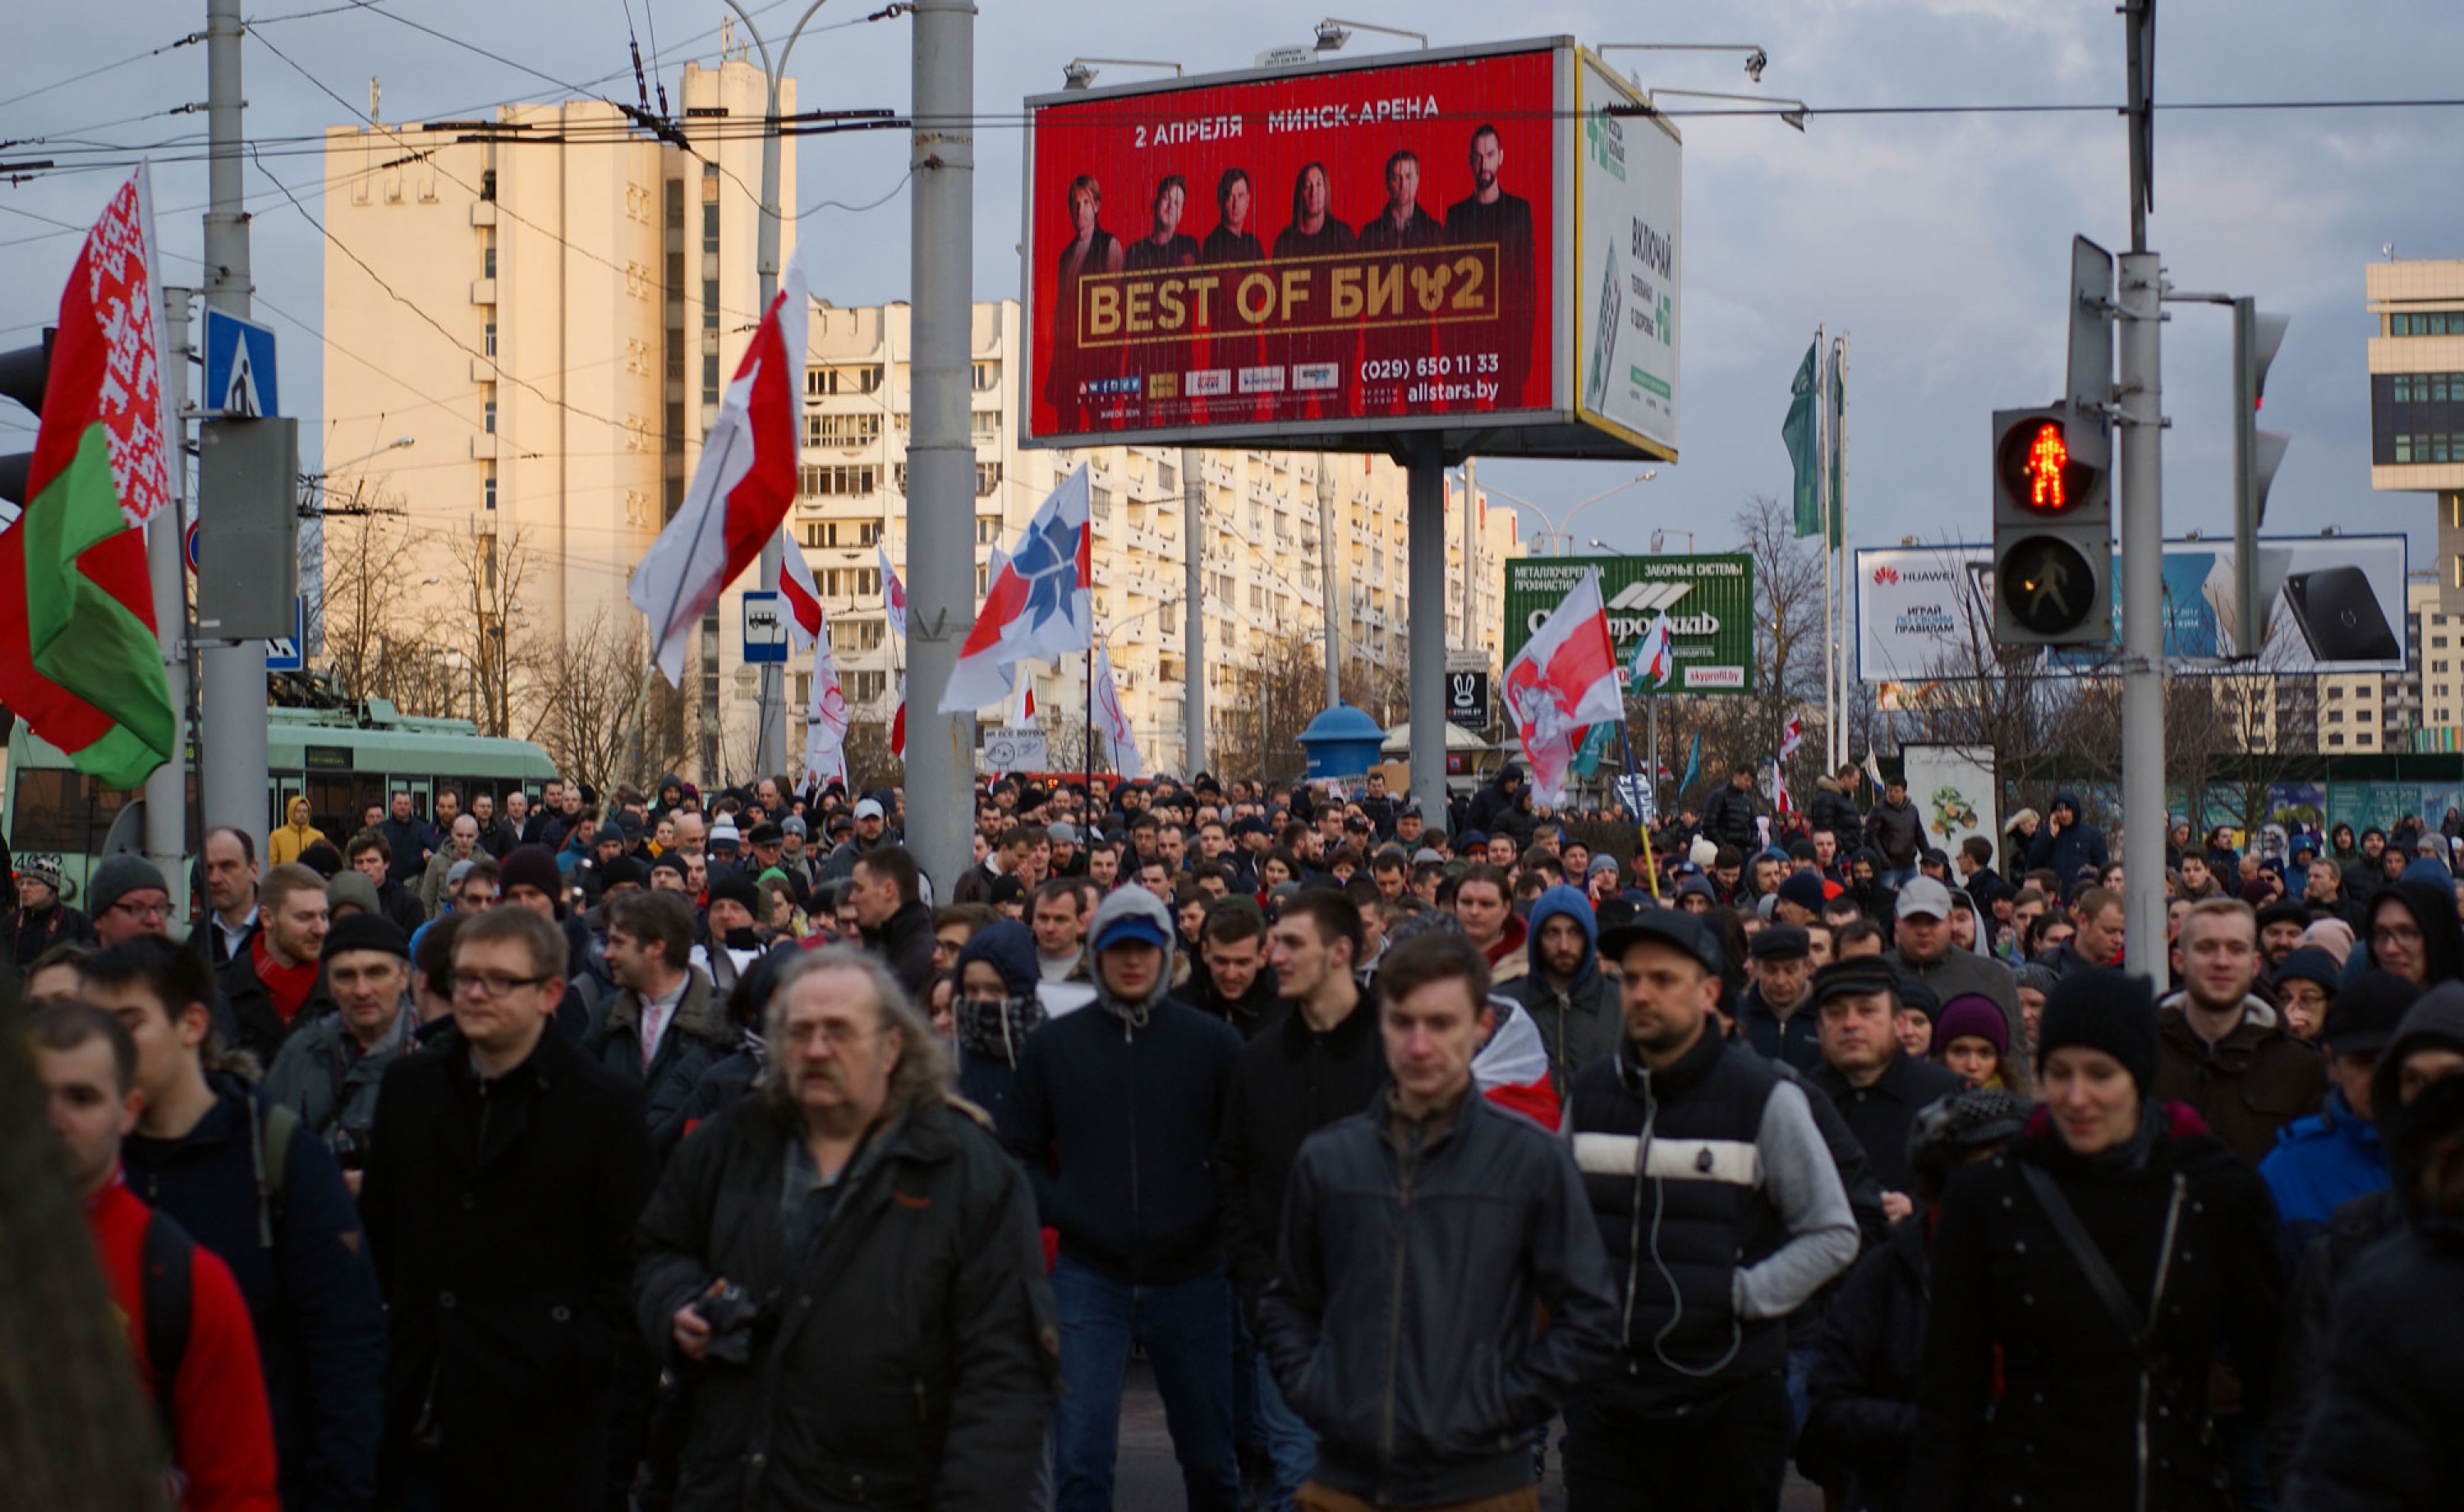 "Марш нетунеядцев" в Минске 15 марта. Фото: ПЦ "Весна"